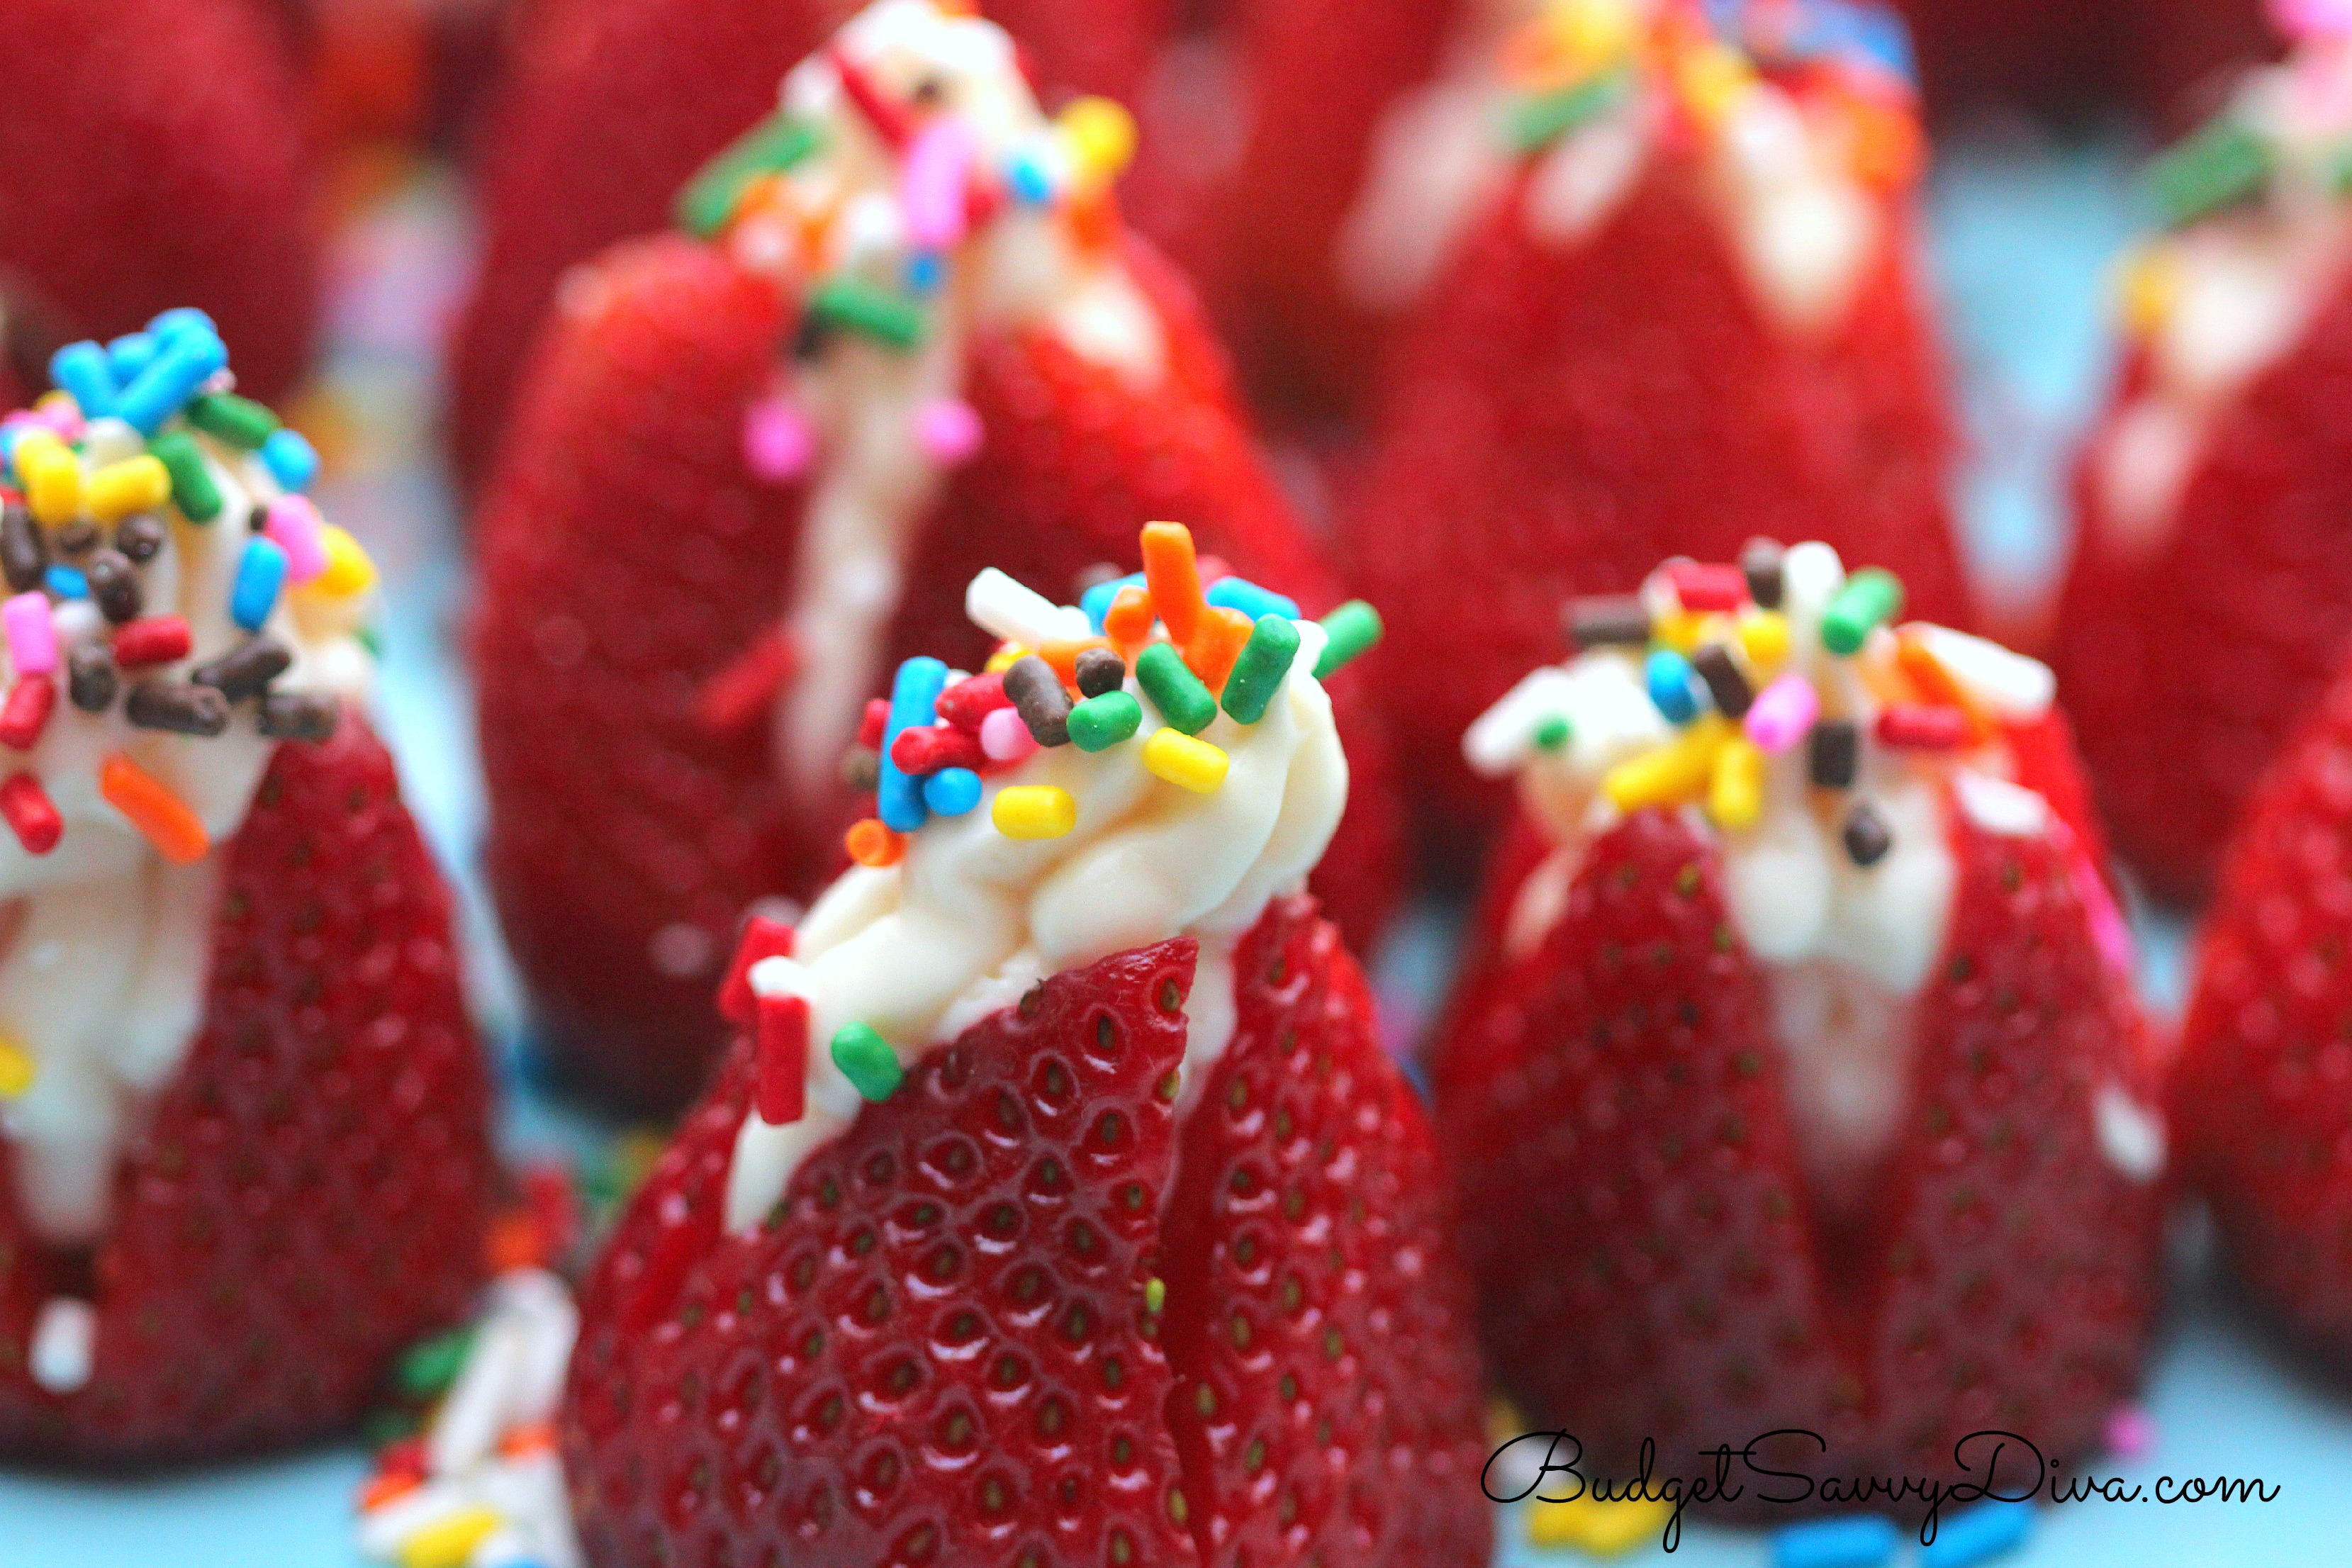 Cheesecake-Stuffed Strawberries Recipe | Budget Savvy Diva